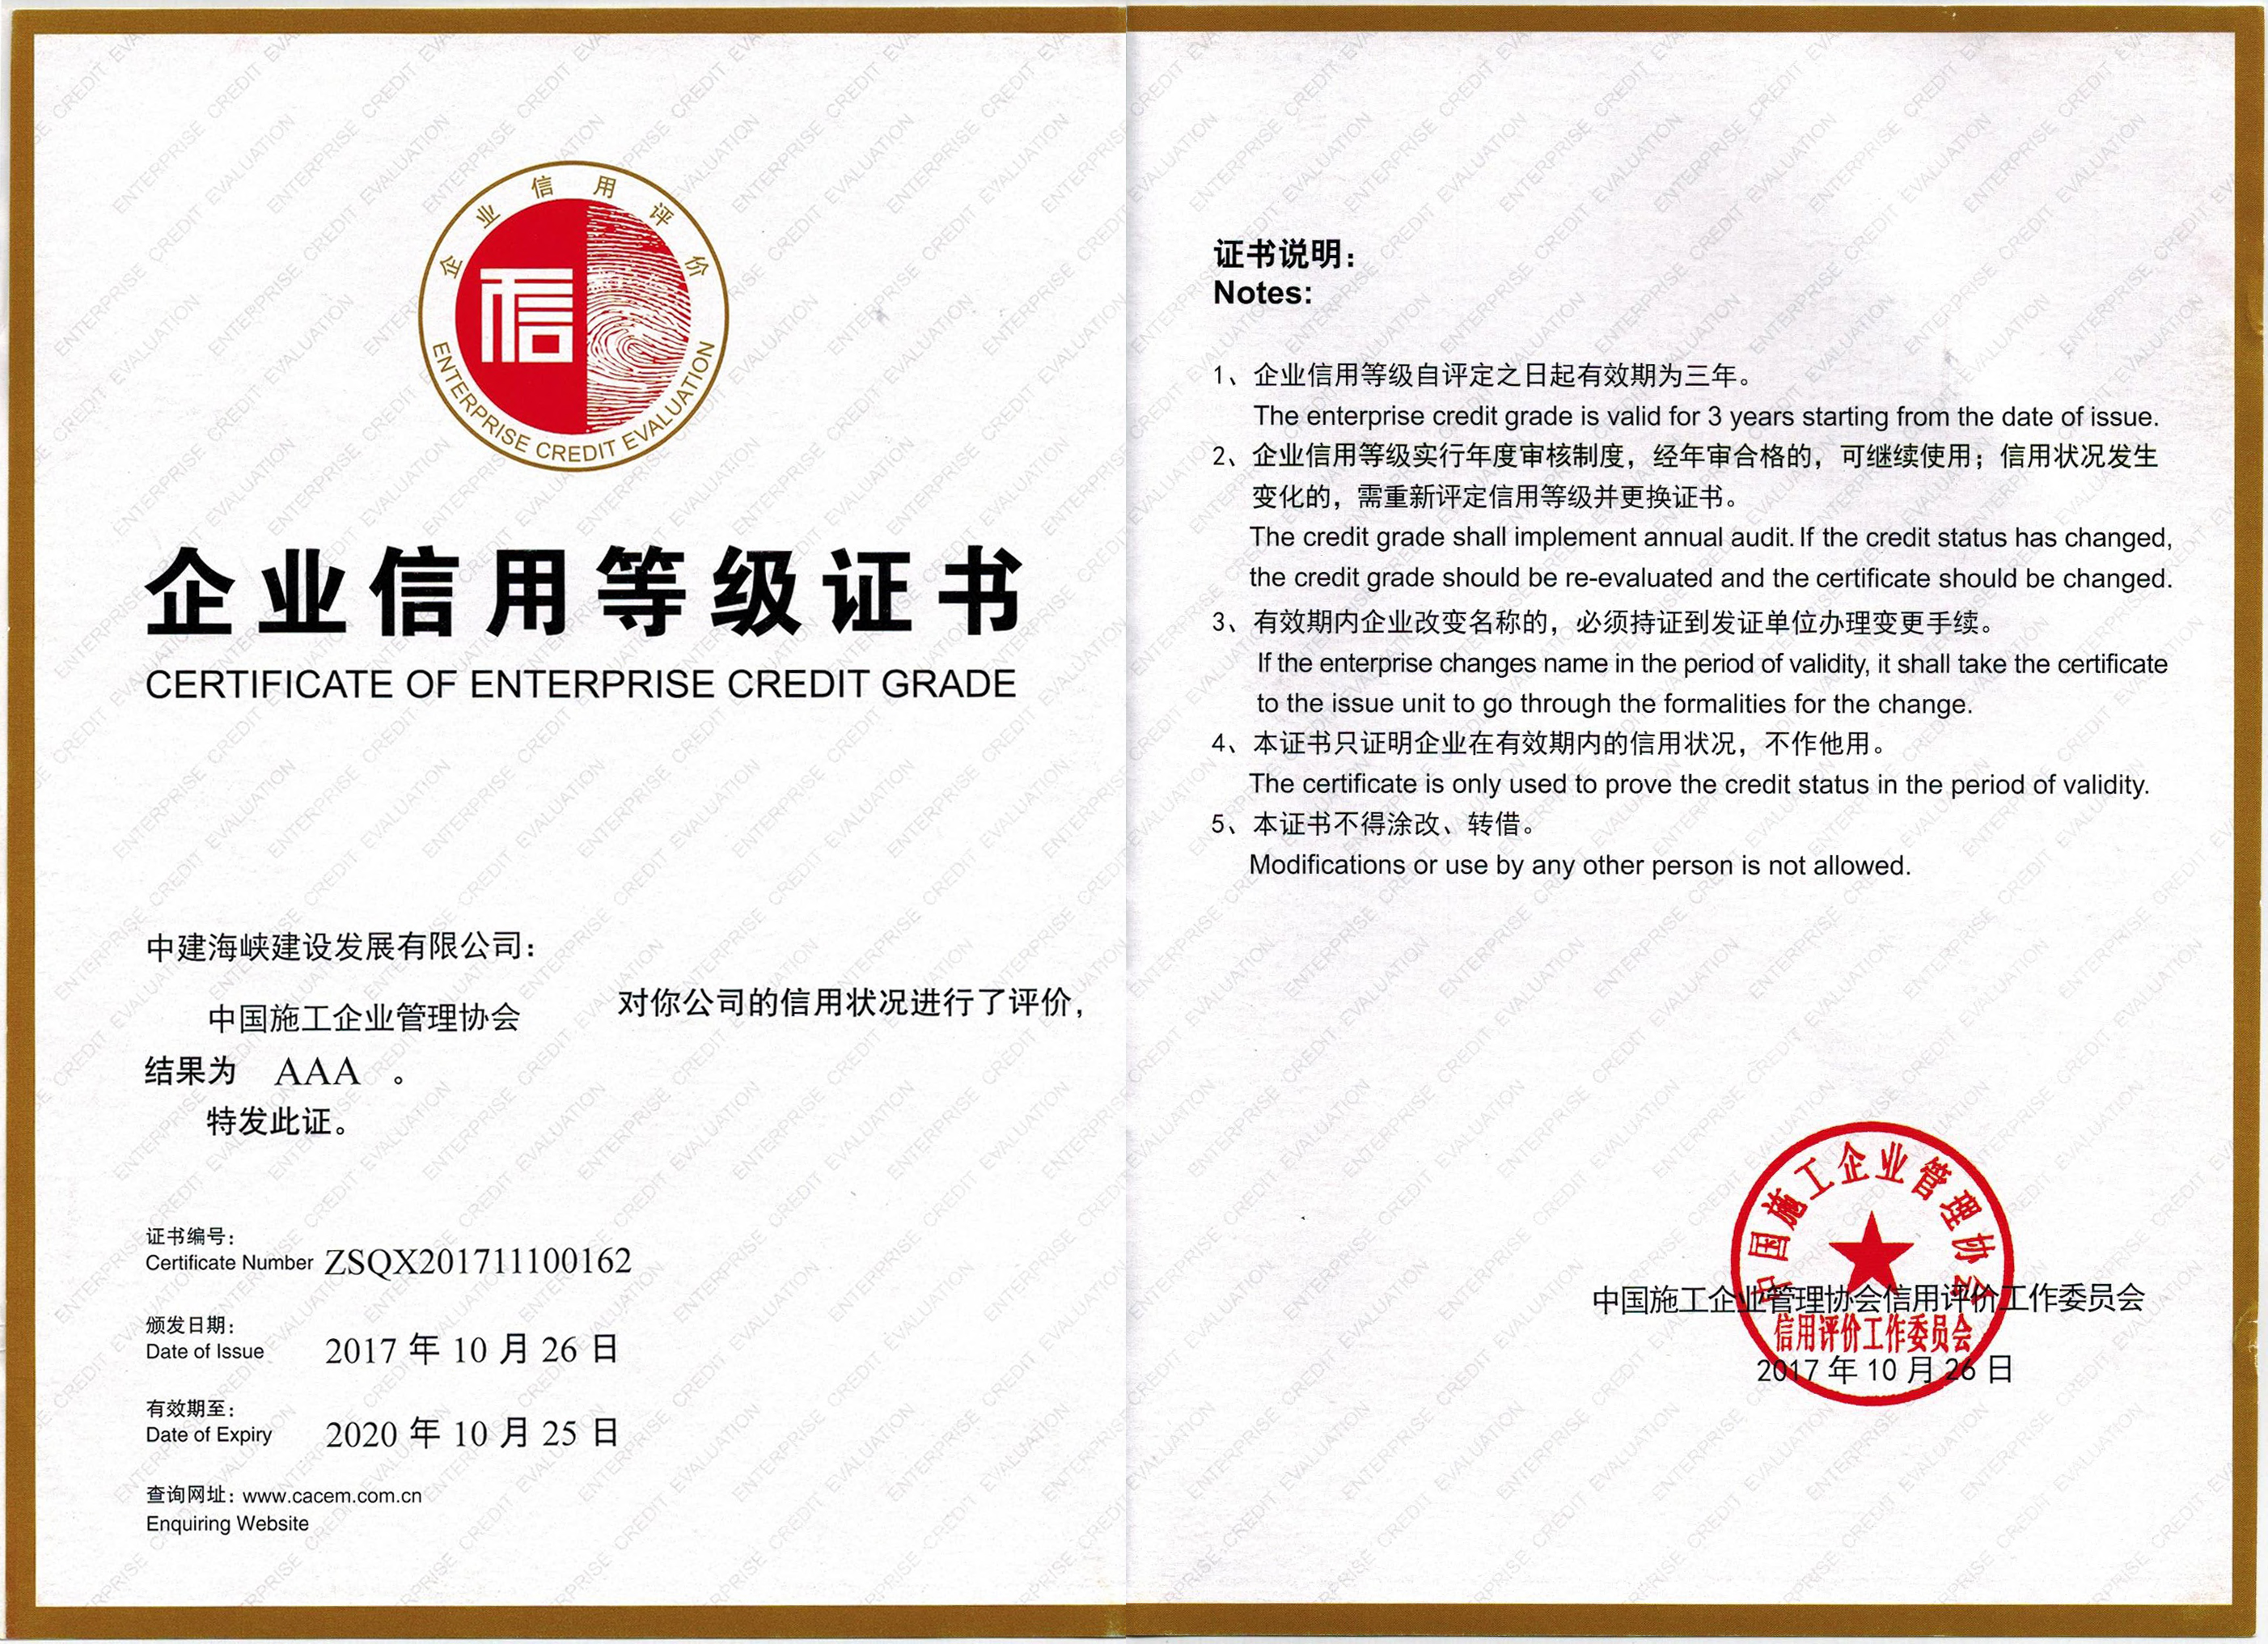 2中国施工企业管理协会aaa企业信用等级证书.jpg